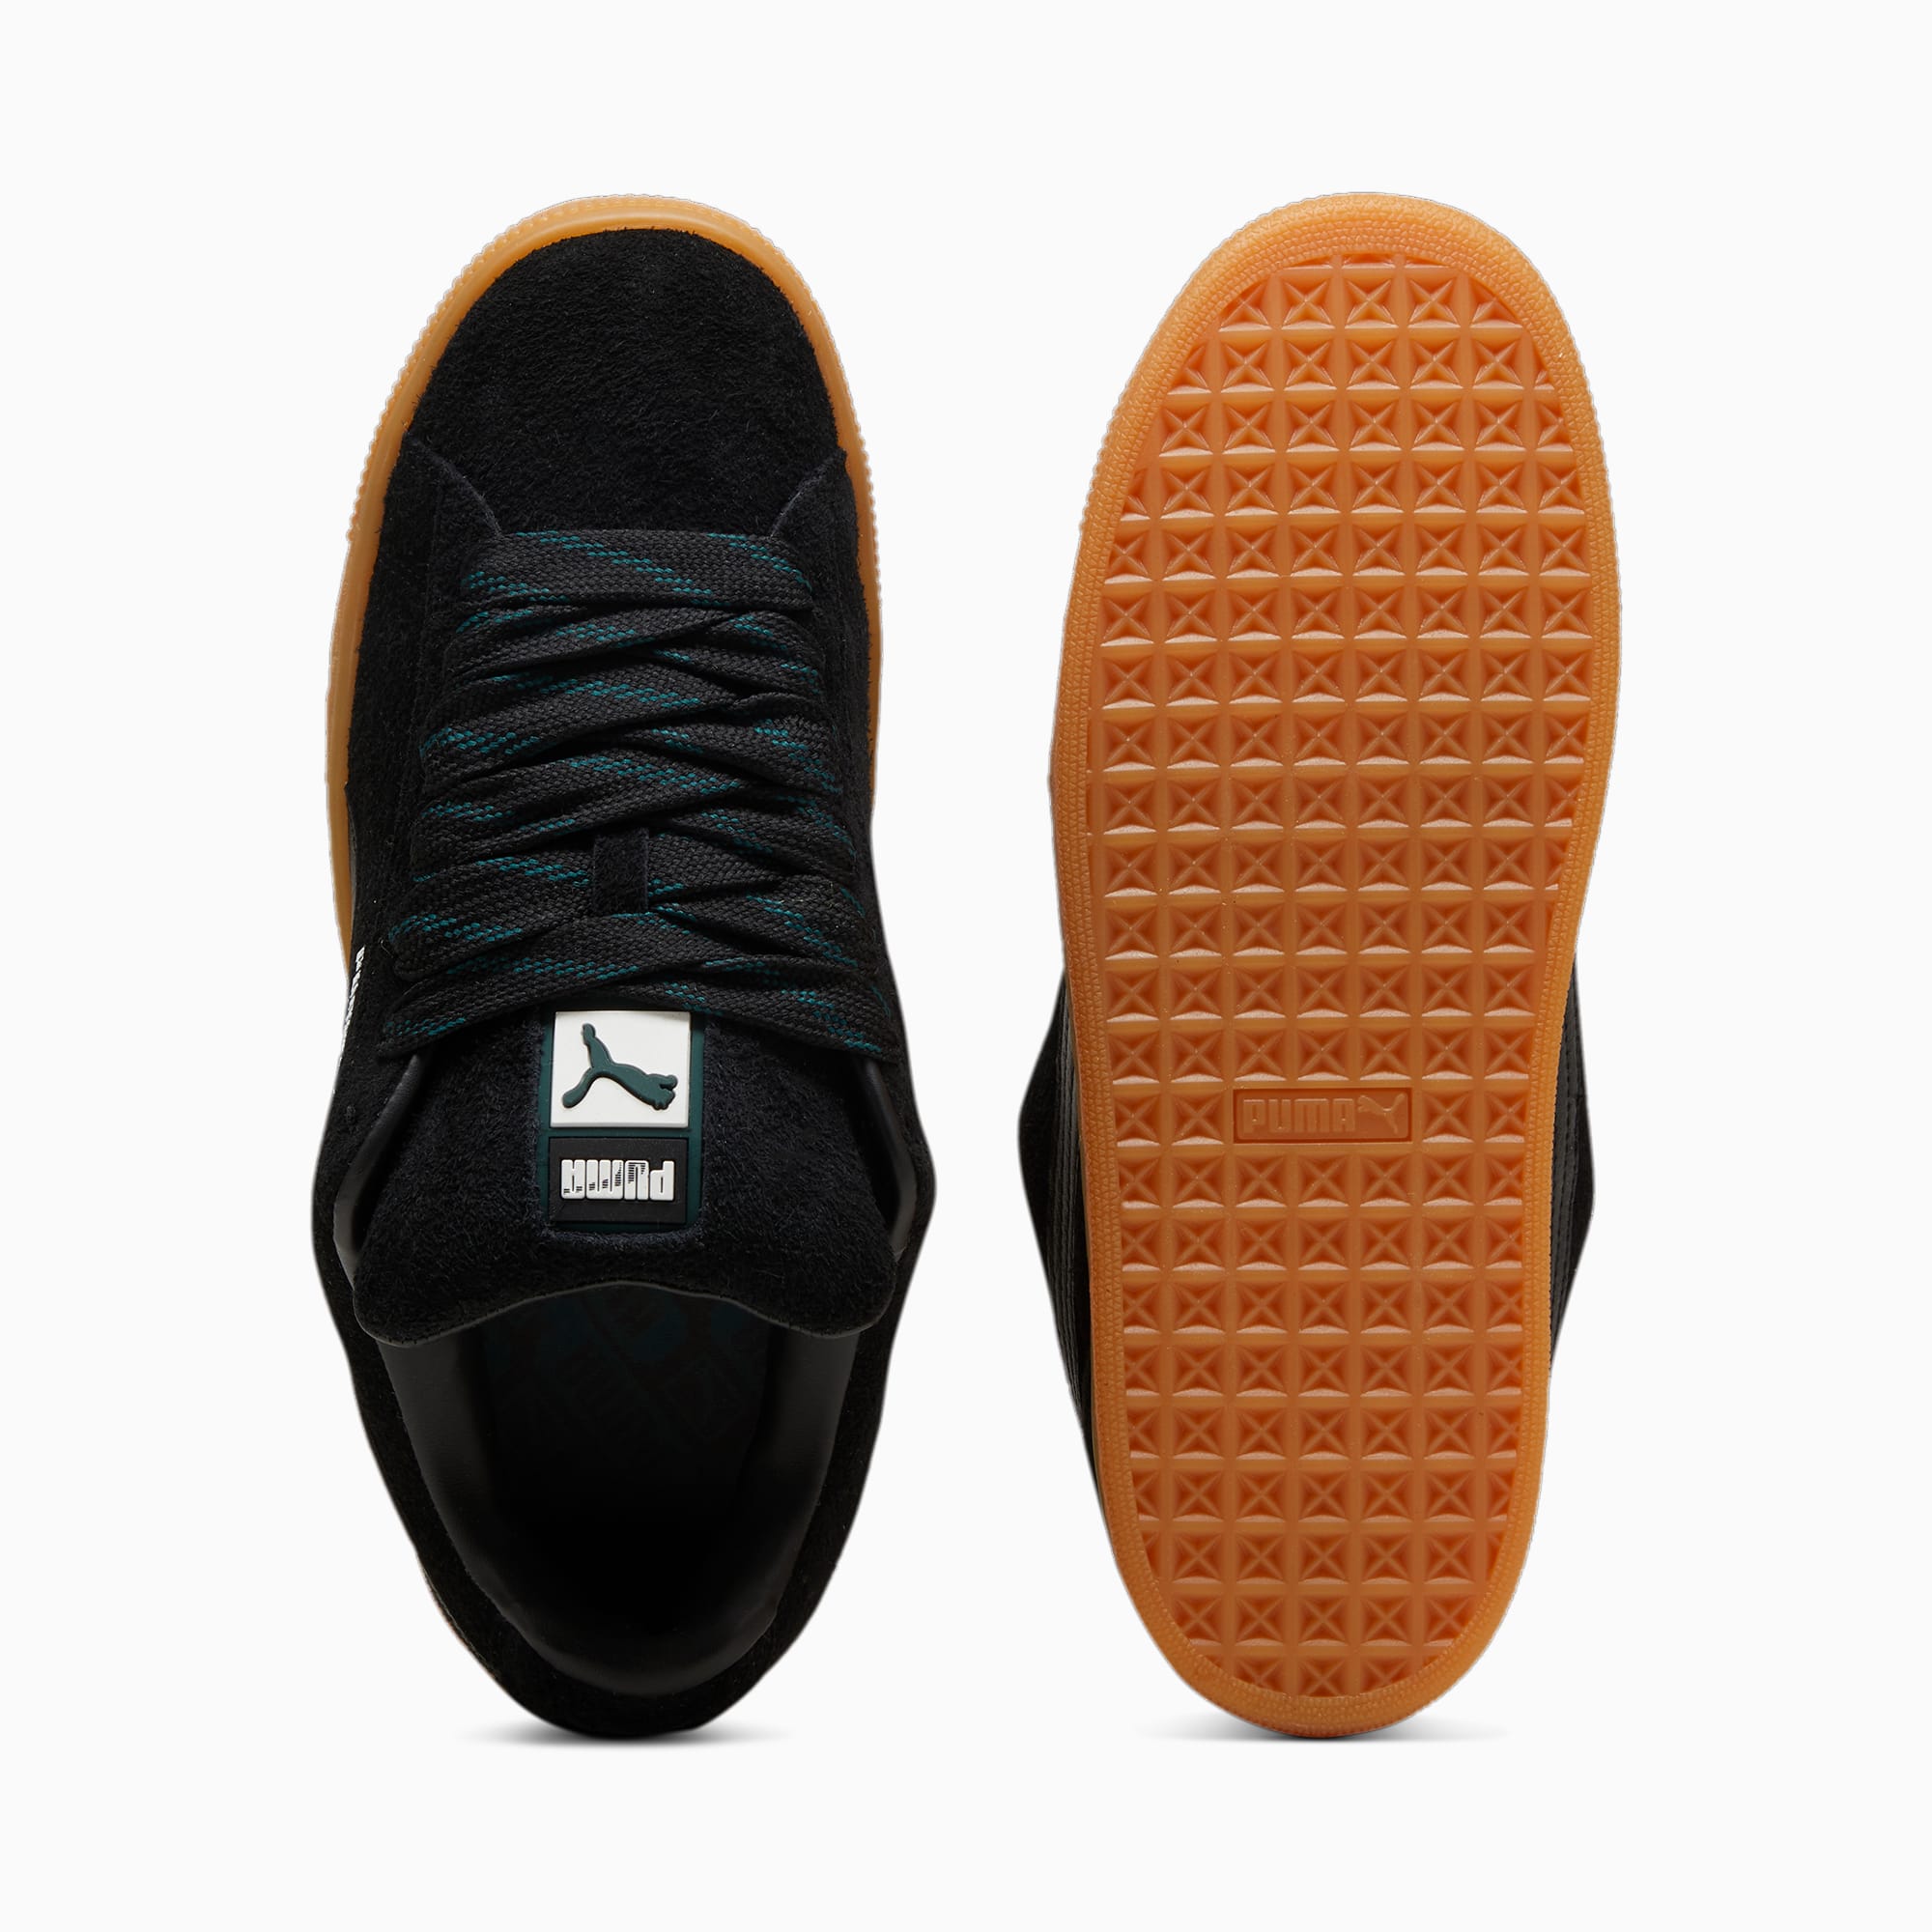 PUMA Suede XL Flecked Sneakers Unisex Schuhe, Schwarz/Grün, Größe: 41, Schuhe